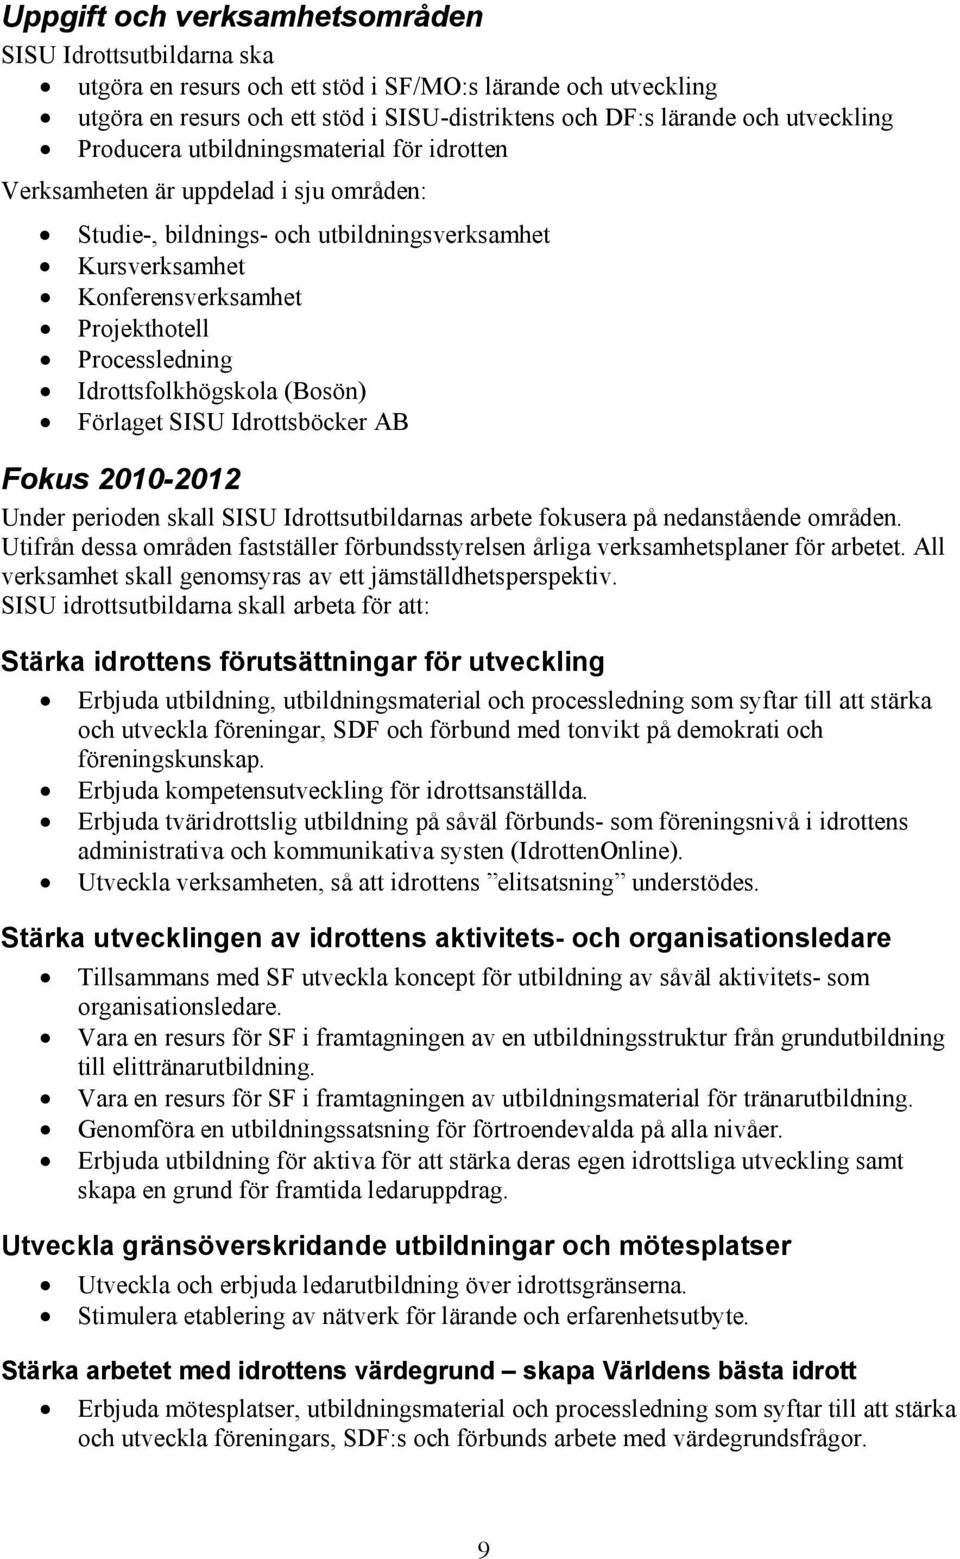 Processledning Idrottsfolkhögskola (Bosön) Förlaget SISU Idrottsböcker AB Fokus 2010-2012 Under perioden skall SISU Idrottsutbildarnas arbete fokusera på nedanstående områden.